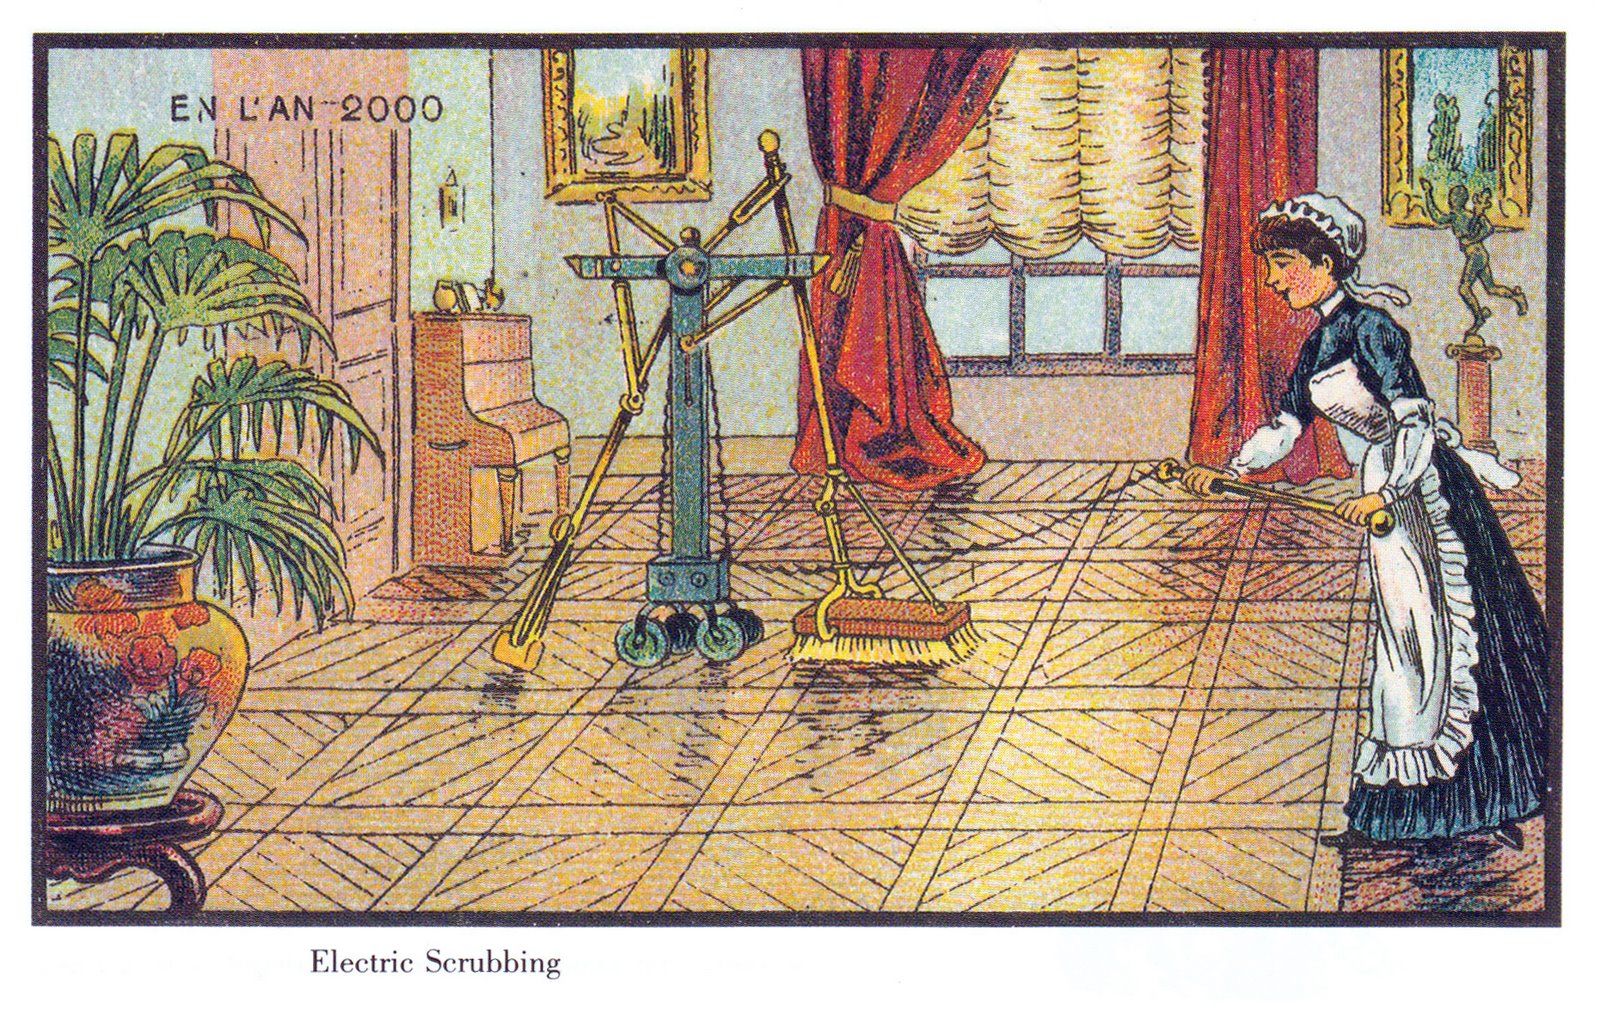 L'An 2000: ilustración de una barredora eléctrica